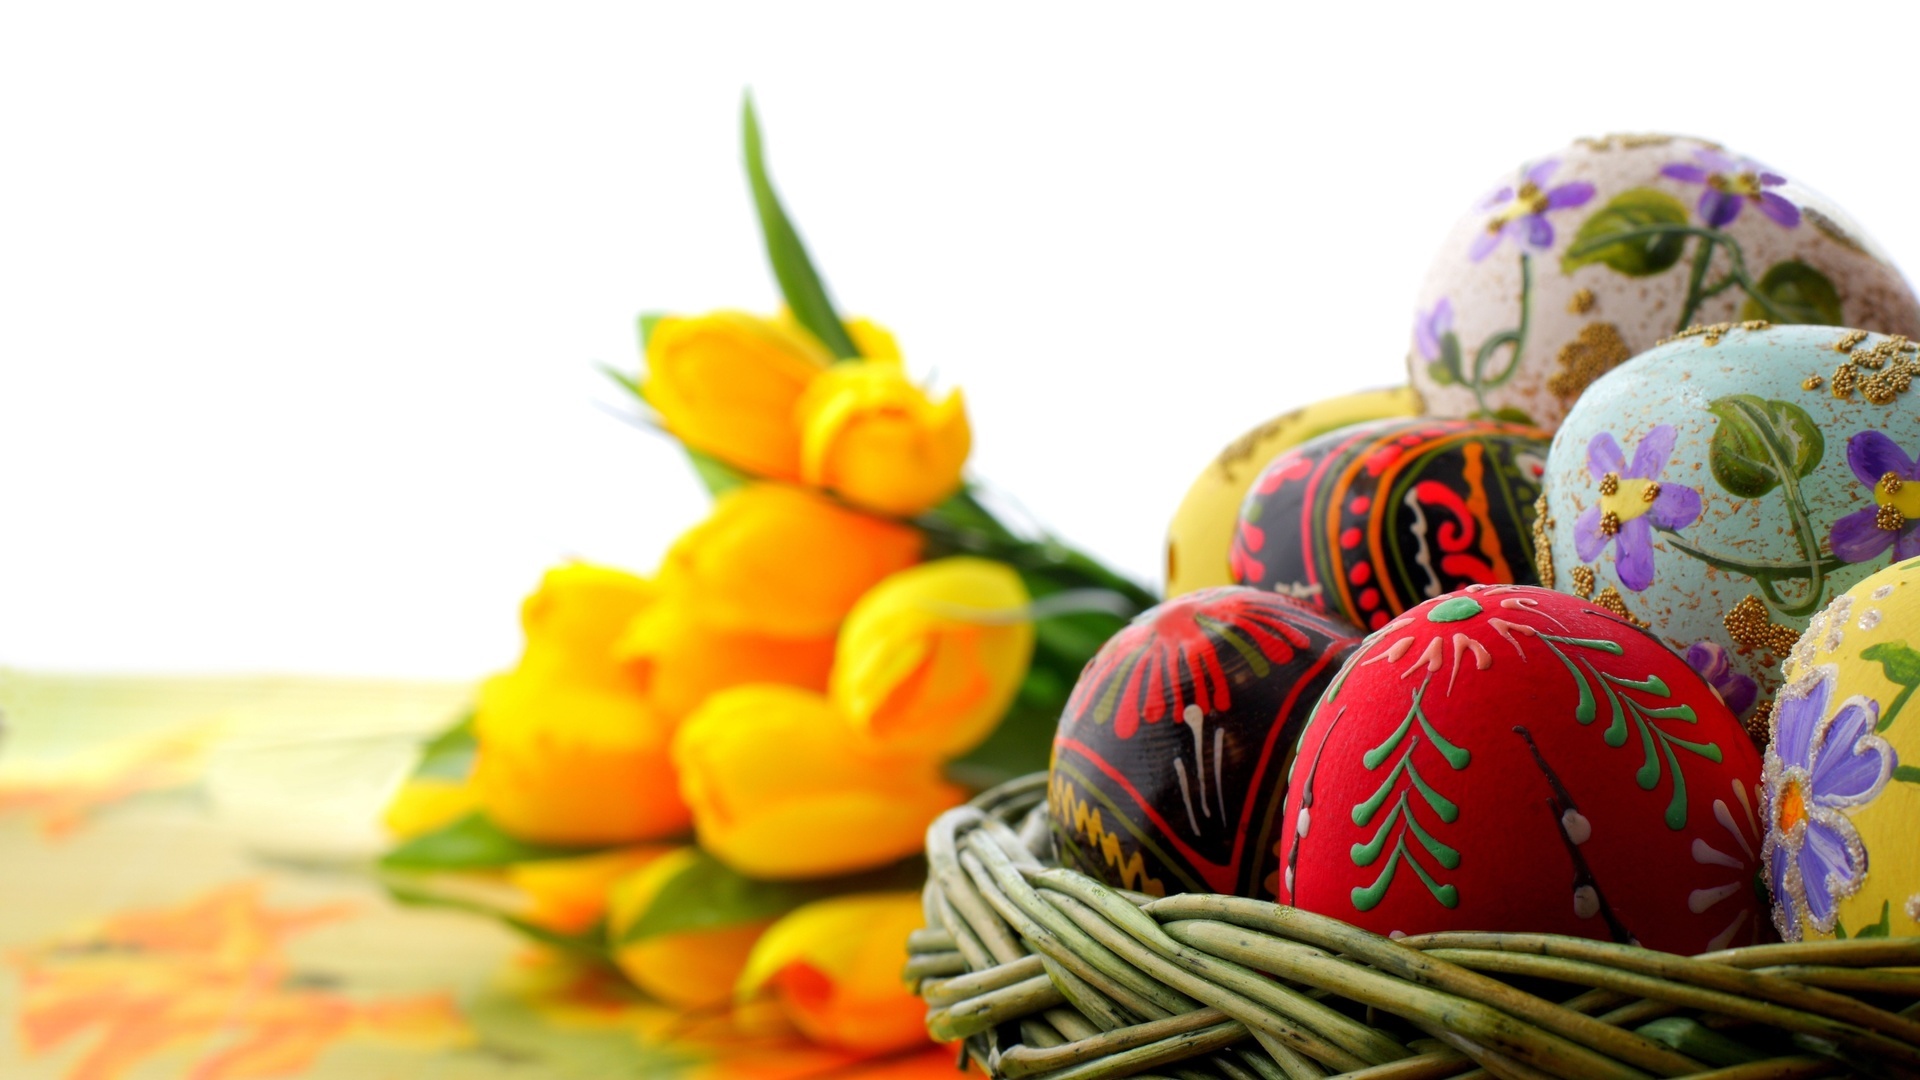 Скачать обои бесплатно Праздники, Цветы, Яйца, Пасха картинка на рабочий стол ПК